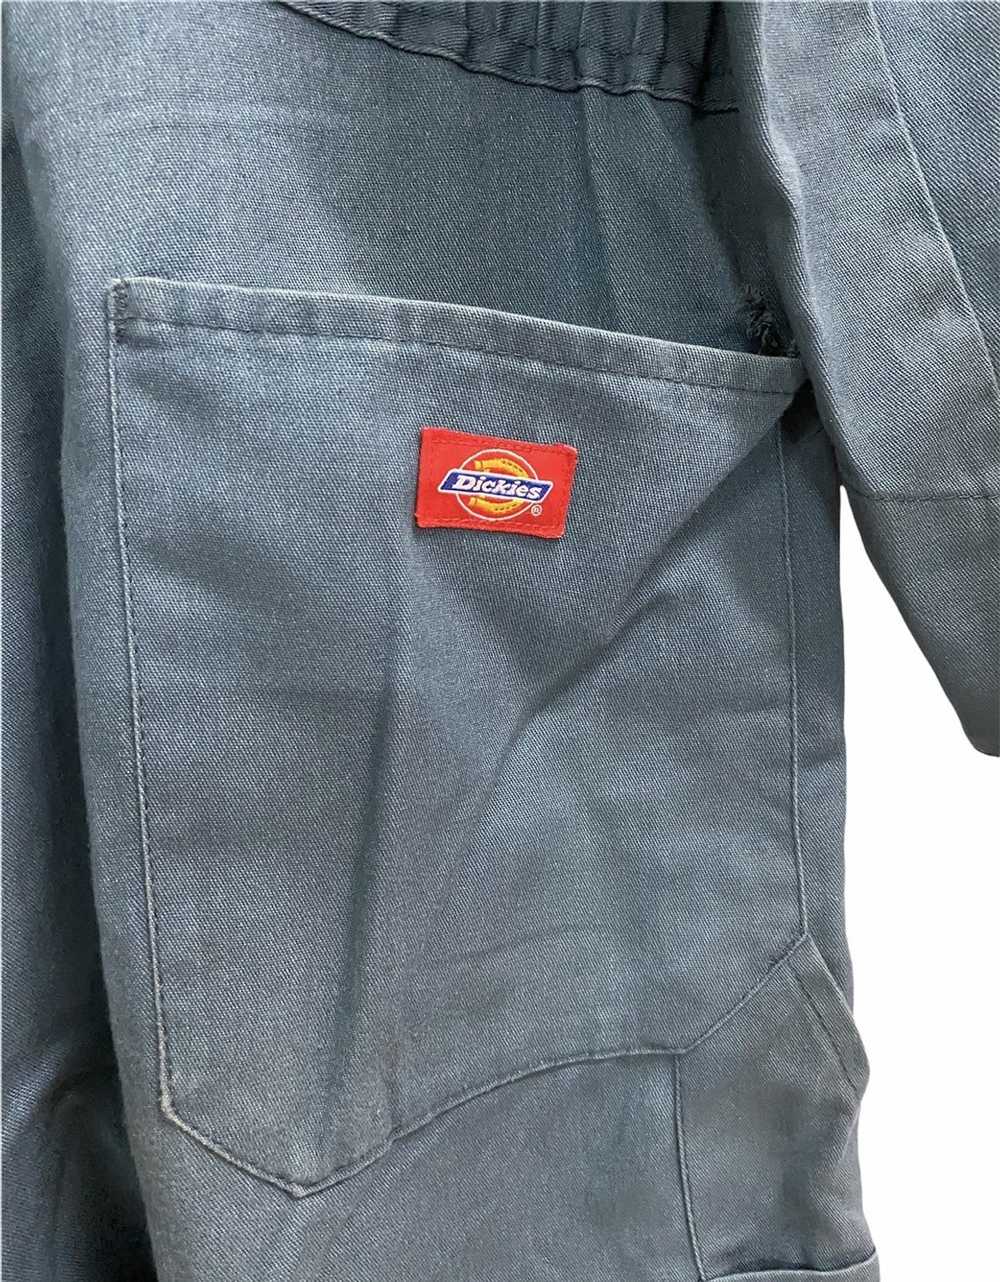 Dickies × Workers Vintage Dickies coverall jacket - image 6